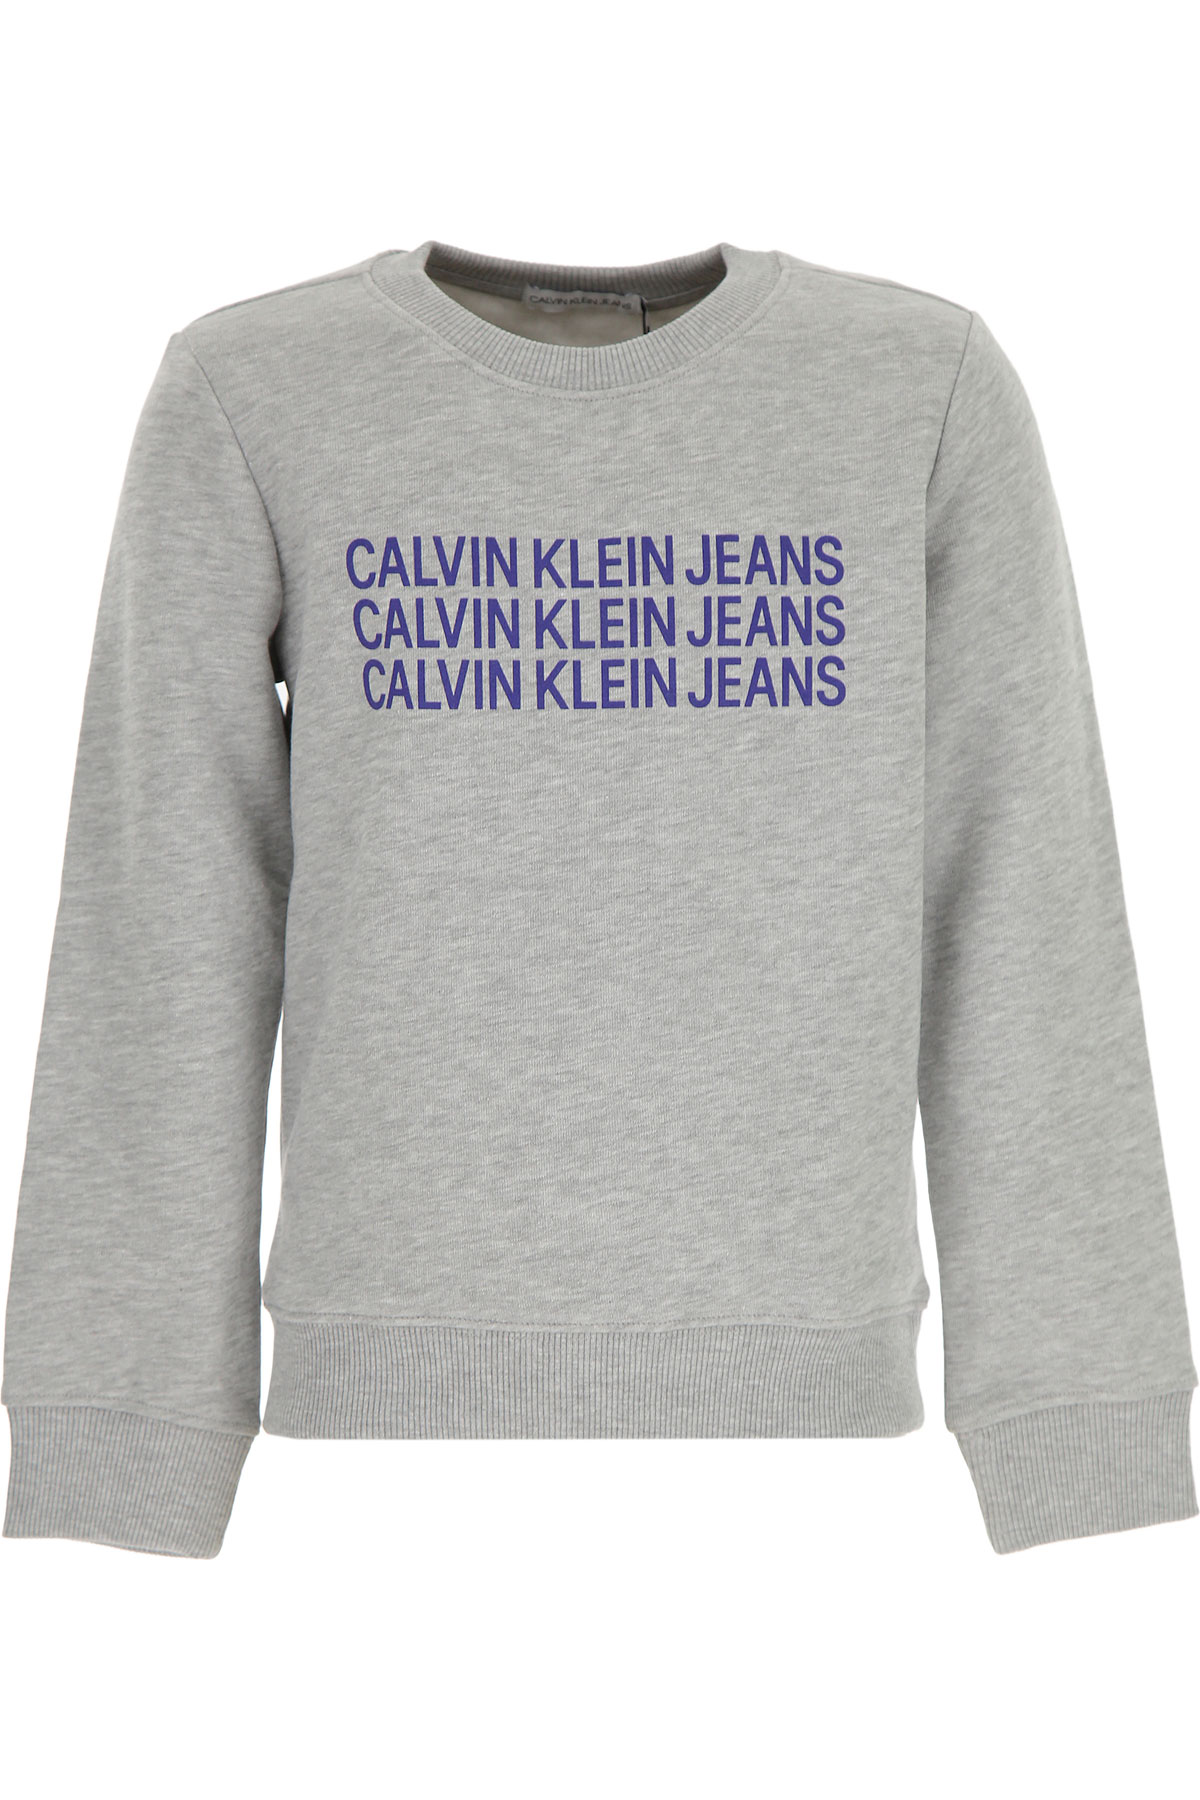 Calvin Klein Kinder Sweatshirt & Kapuzenpullover für Jungen Günstig im Sale, Grau, Baumwolle, 2017, 10Y 12Y 14Y 8Y